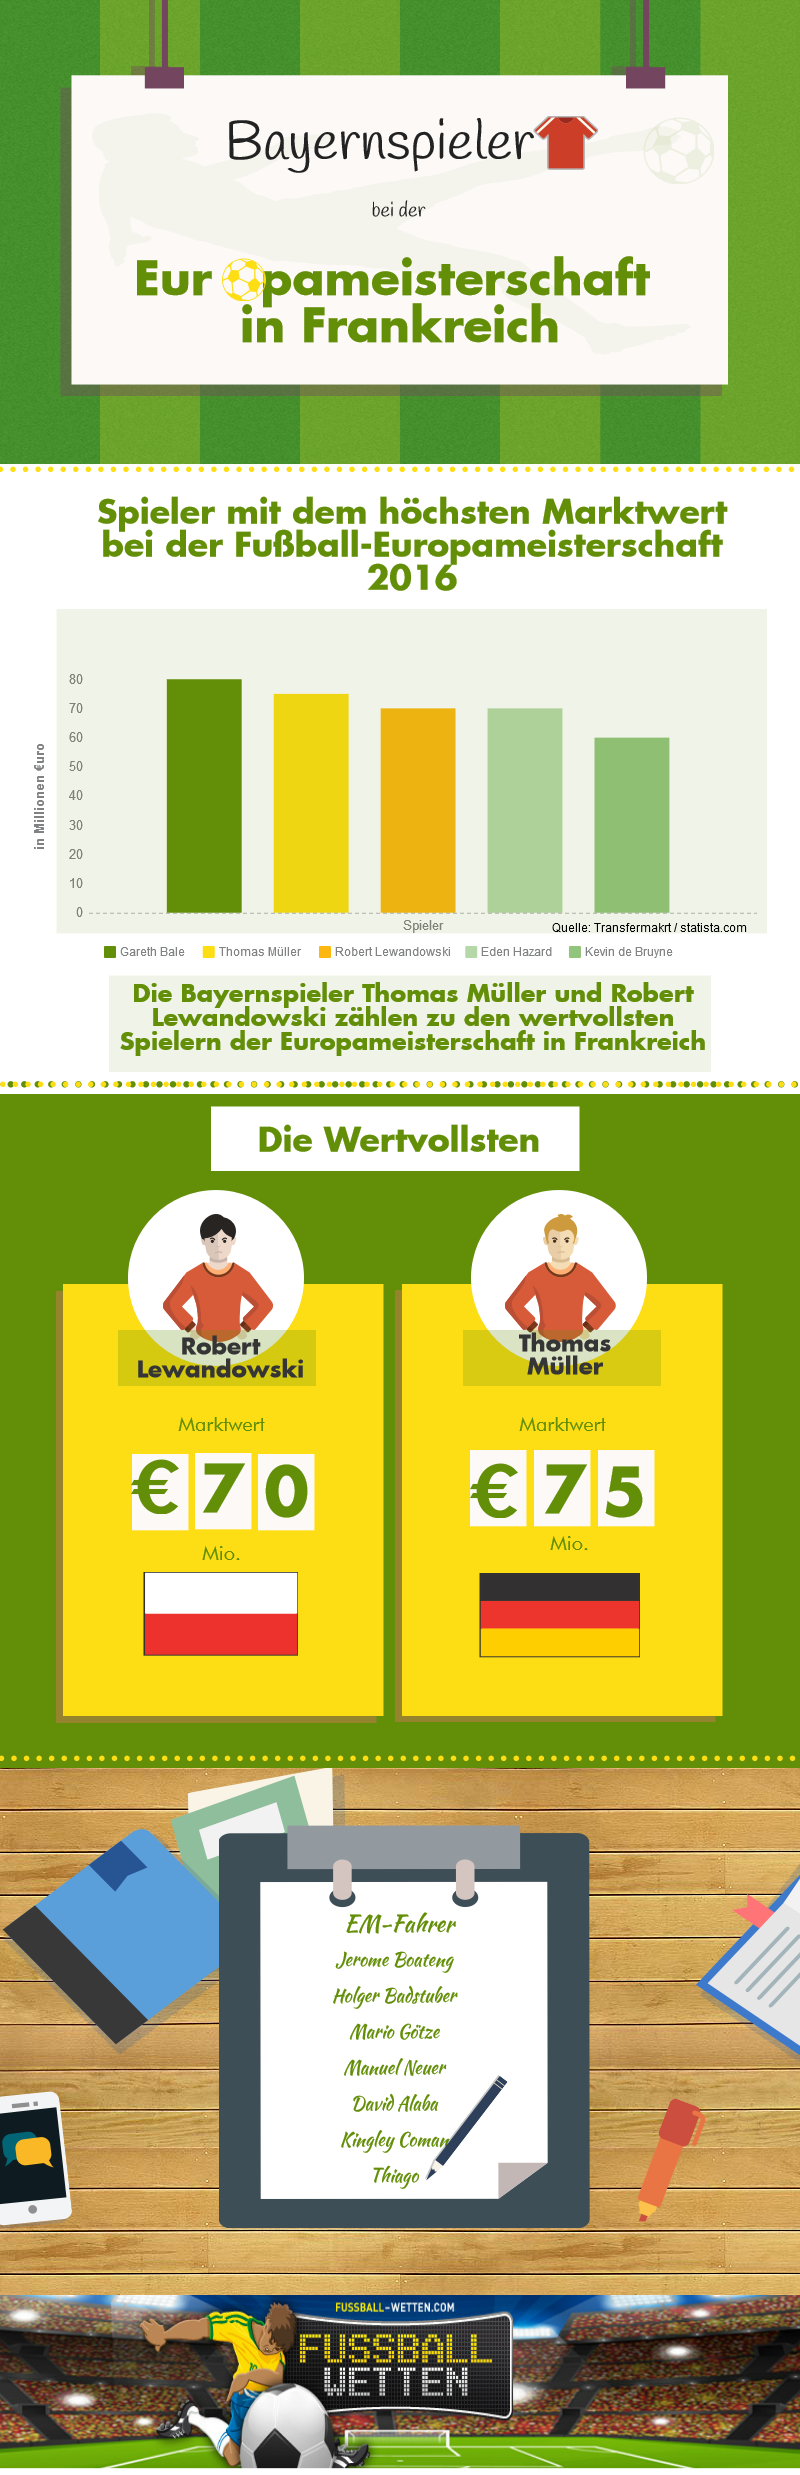 Infografik zu Bayernspielern bei der EM 2016 in Frankreich